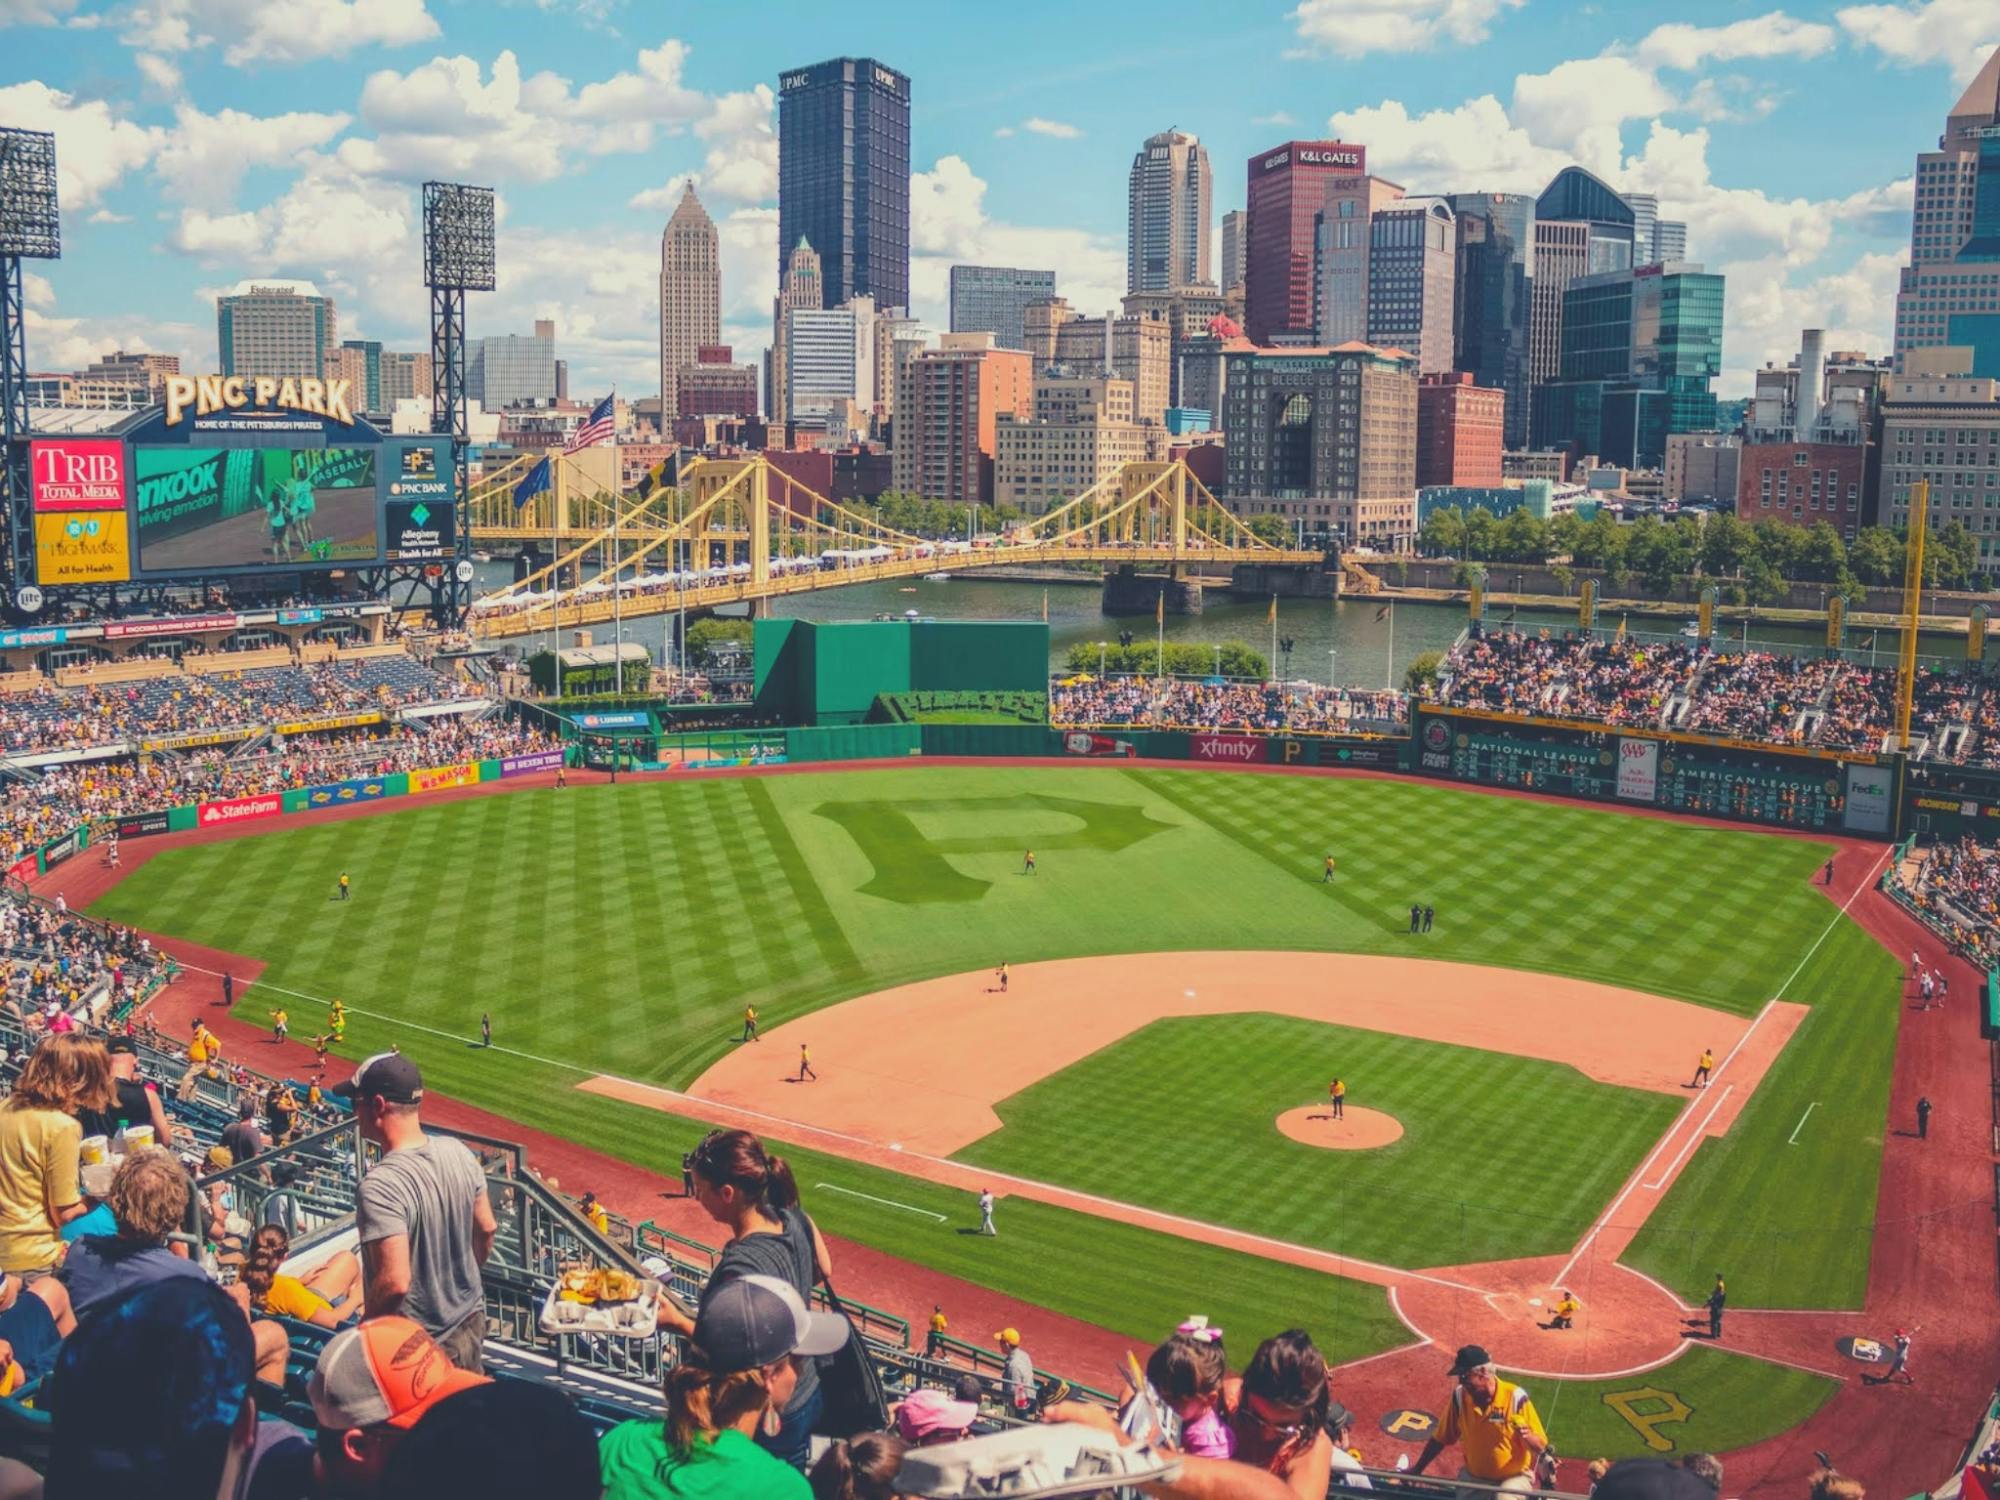 Billets pour le match de baseball des Pirates de Pittsburgh au PNC Park